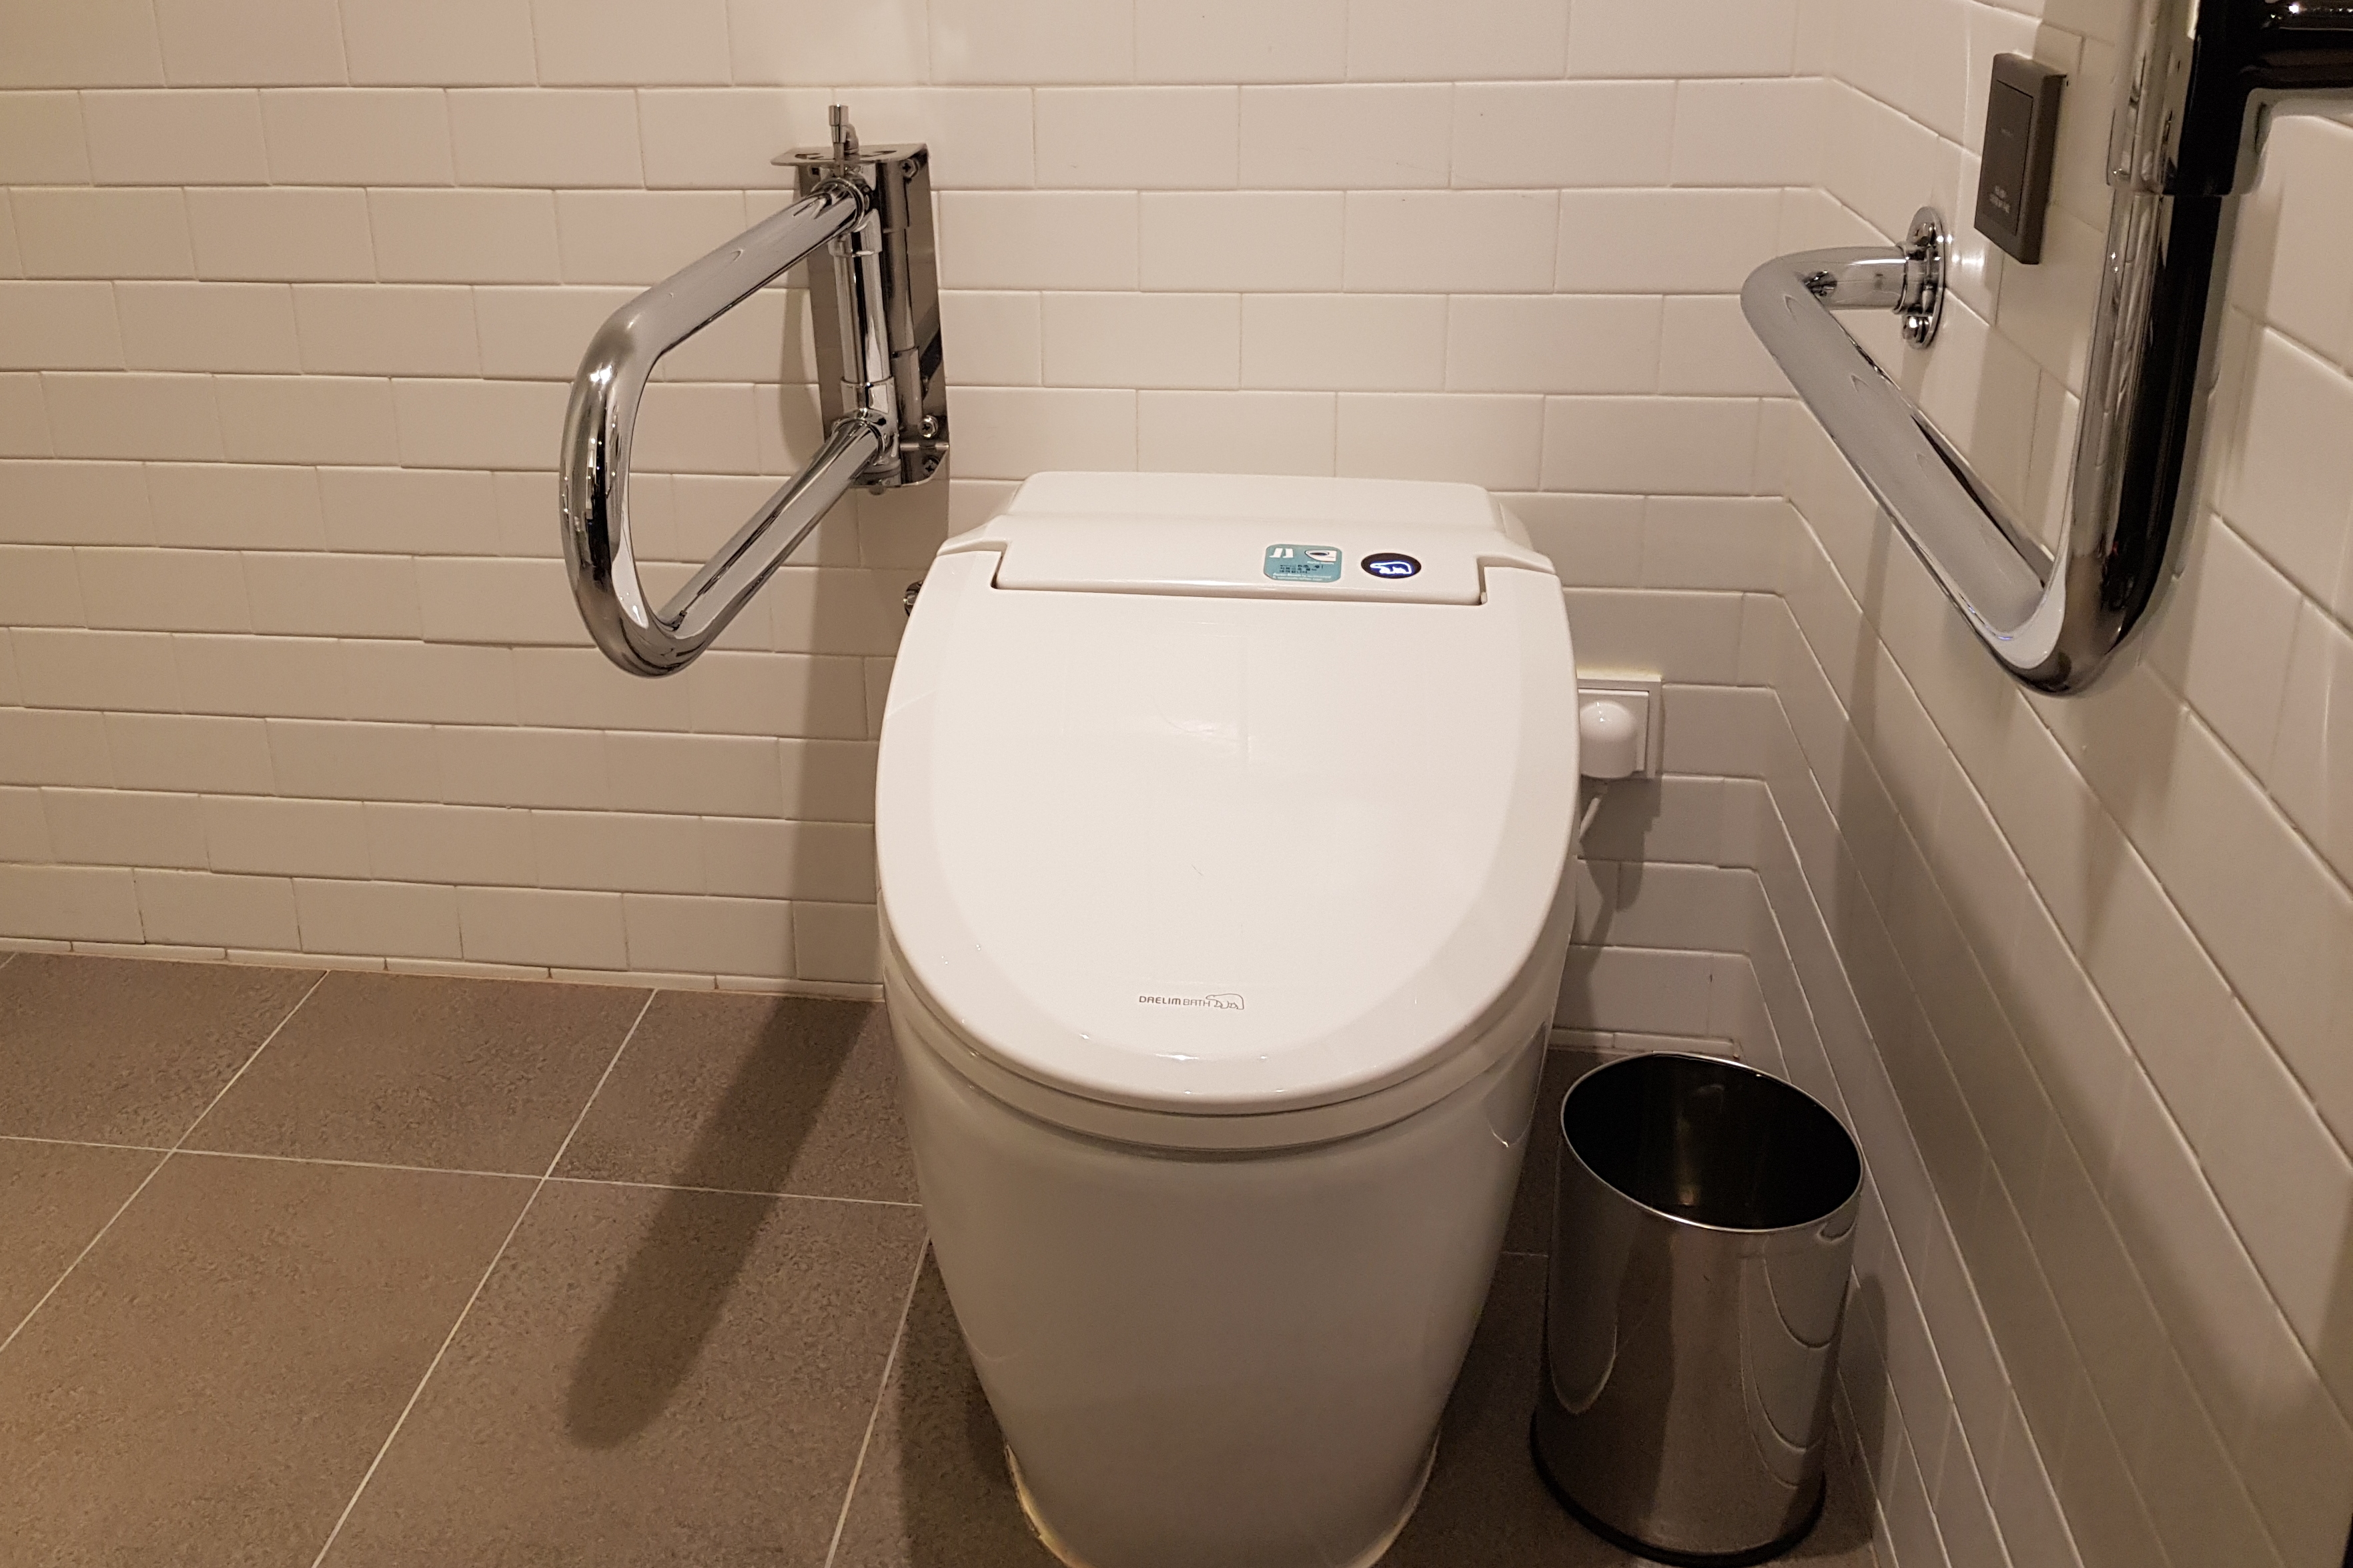 객실 화장실0 : 안전바와 손잡이가 설치되어 있는 글래드호텔강남코엑스 화장실 전경